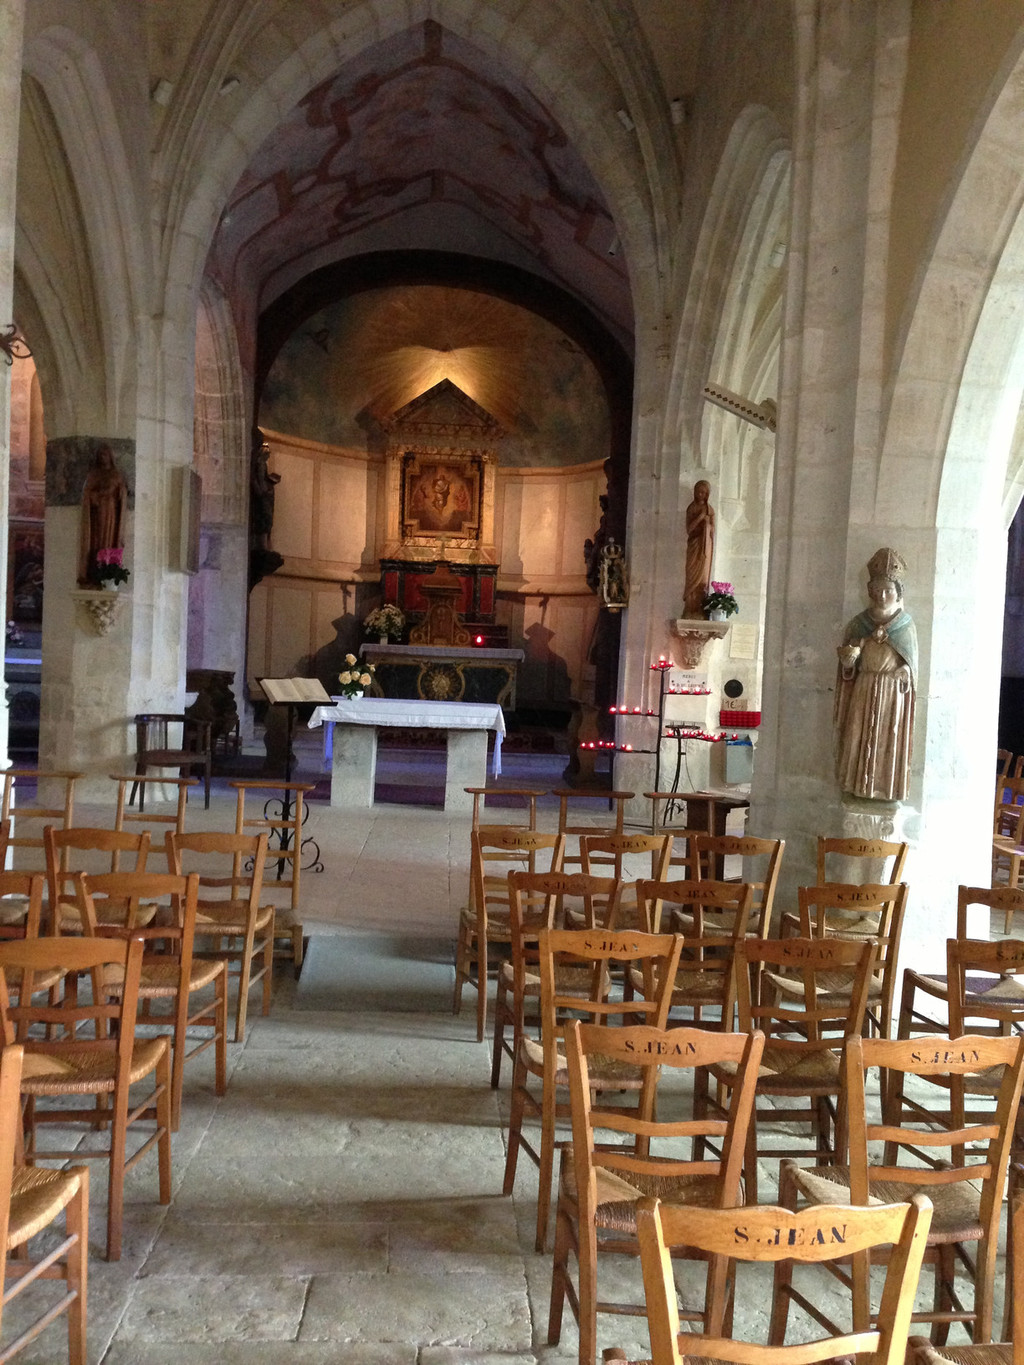 法国小城镇上的教堂一般都是很小的那种,除了圣母圣子的画像外,只有